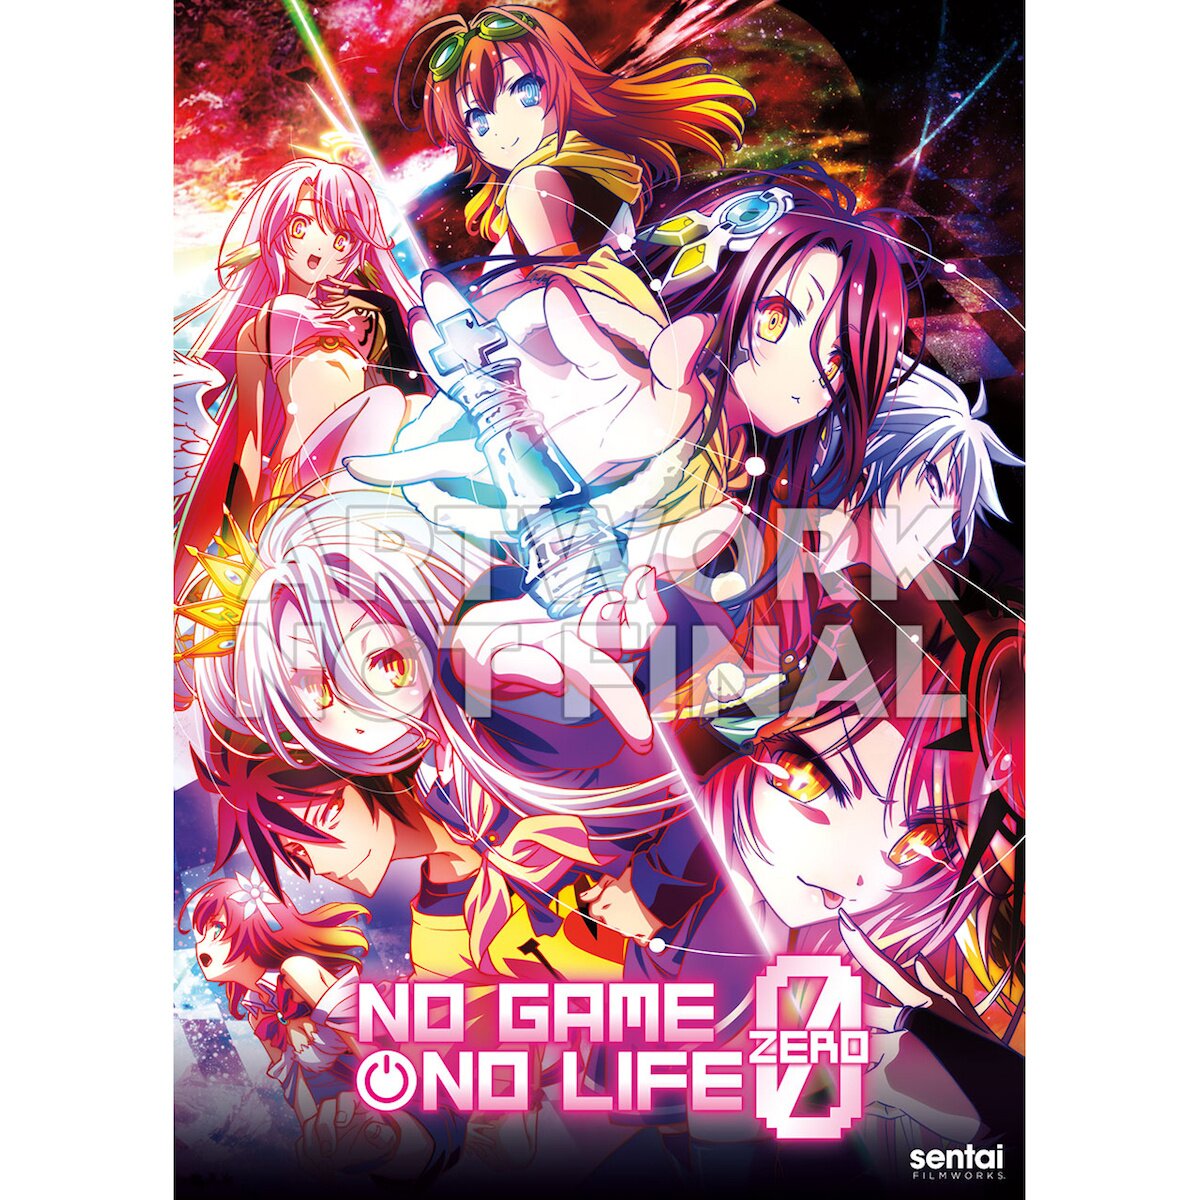 No Game No Life: Zero Blu-ray / DVD